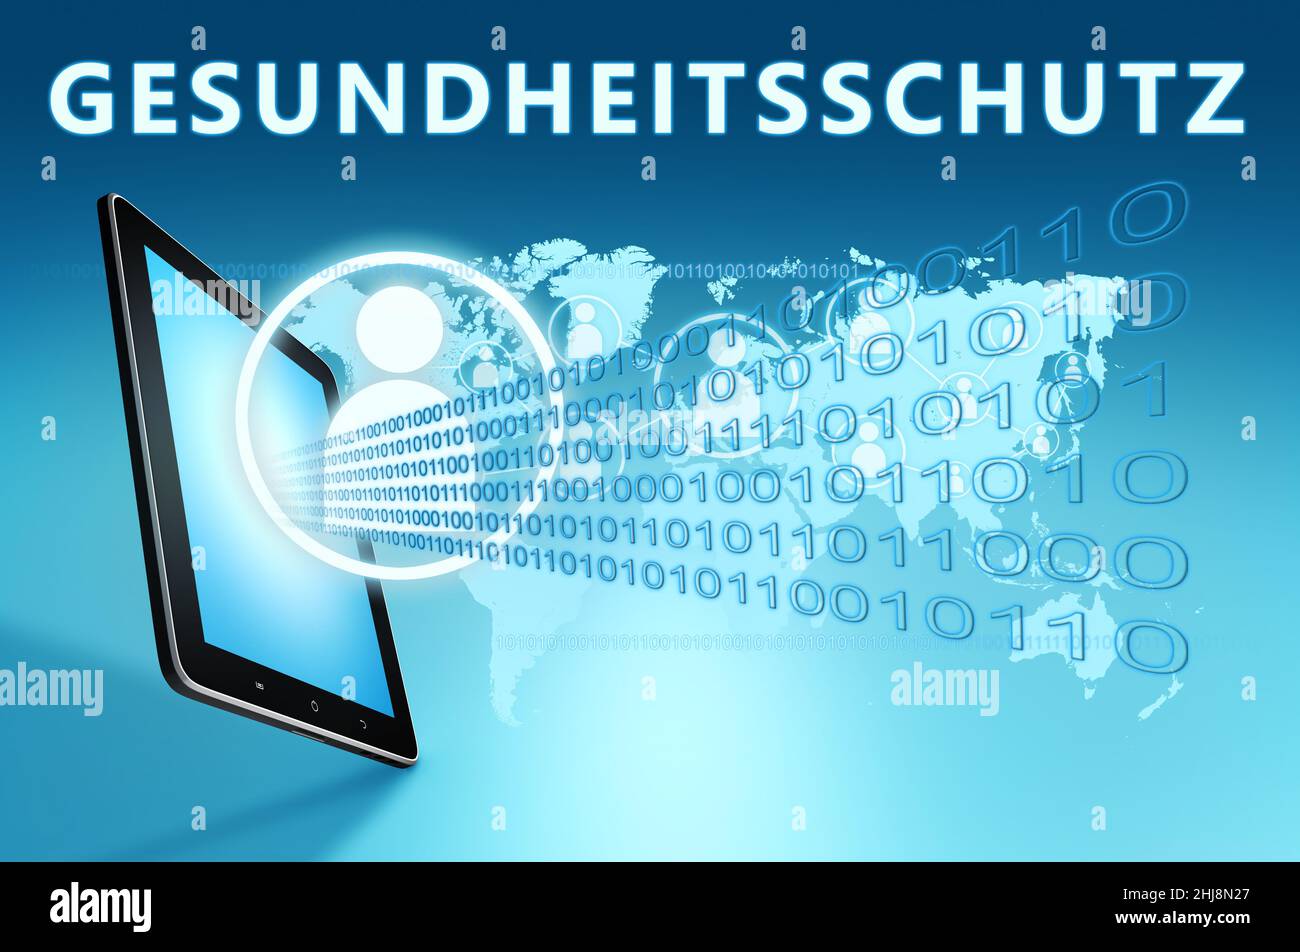 Gesundheitschutz - mot allemand pour la protection de la santé ou de la santé - concept de texte avec ordinateur de tablette sur fond bleu de carte de wolrd - 3D rendu illus Banque D'Images